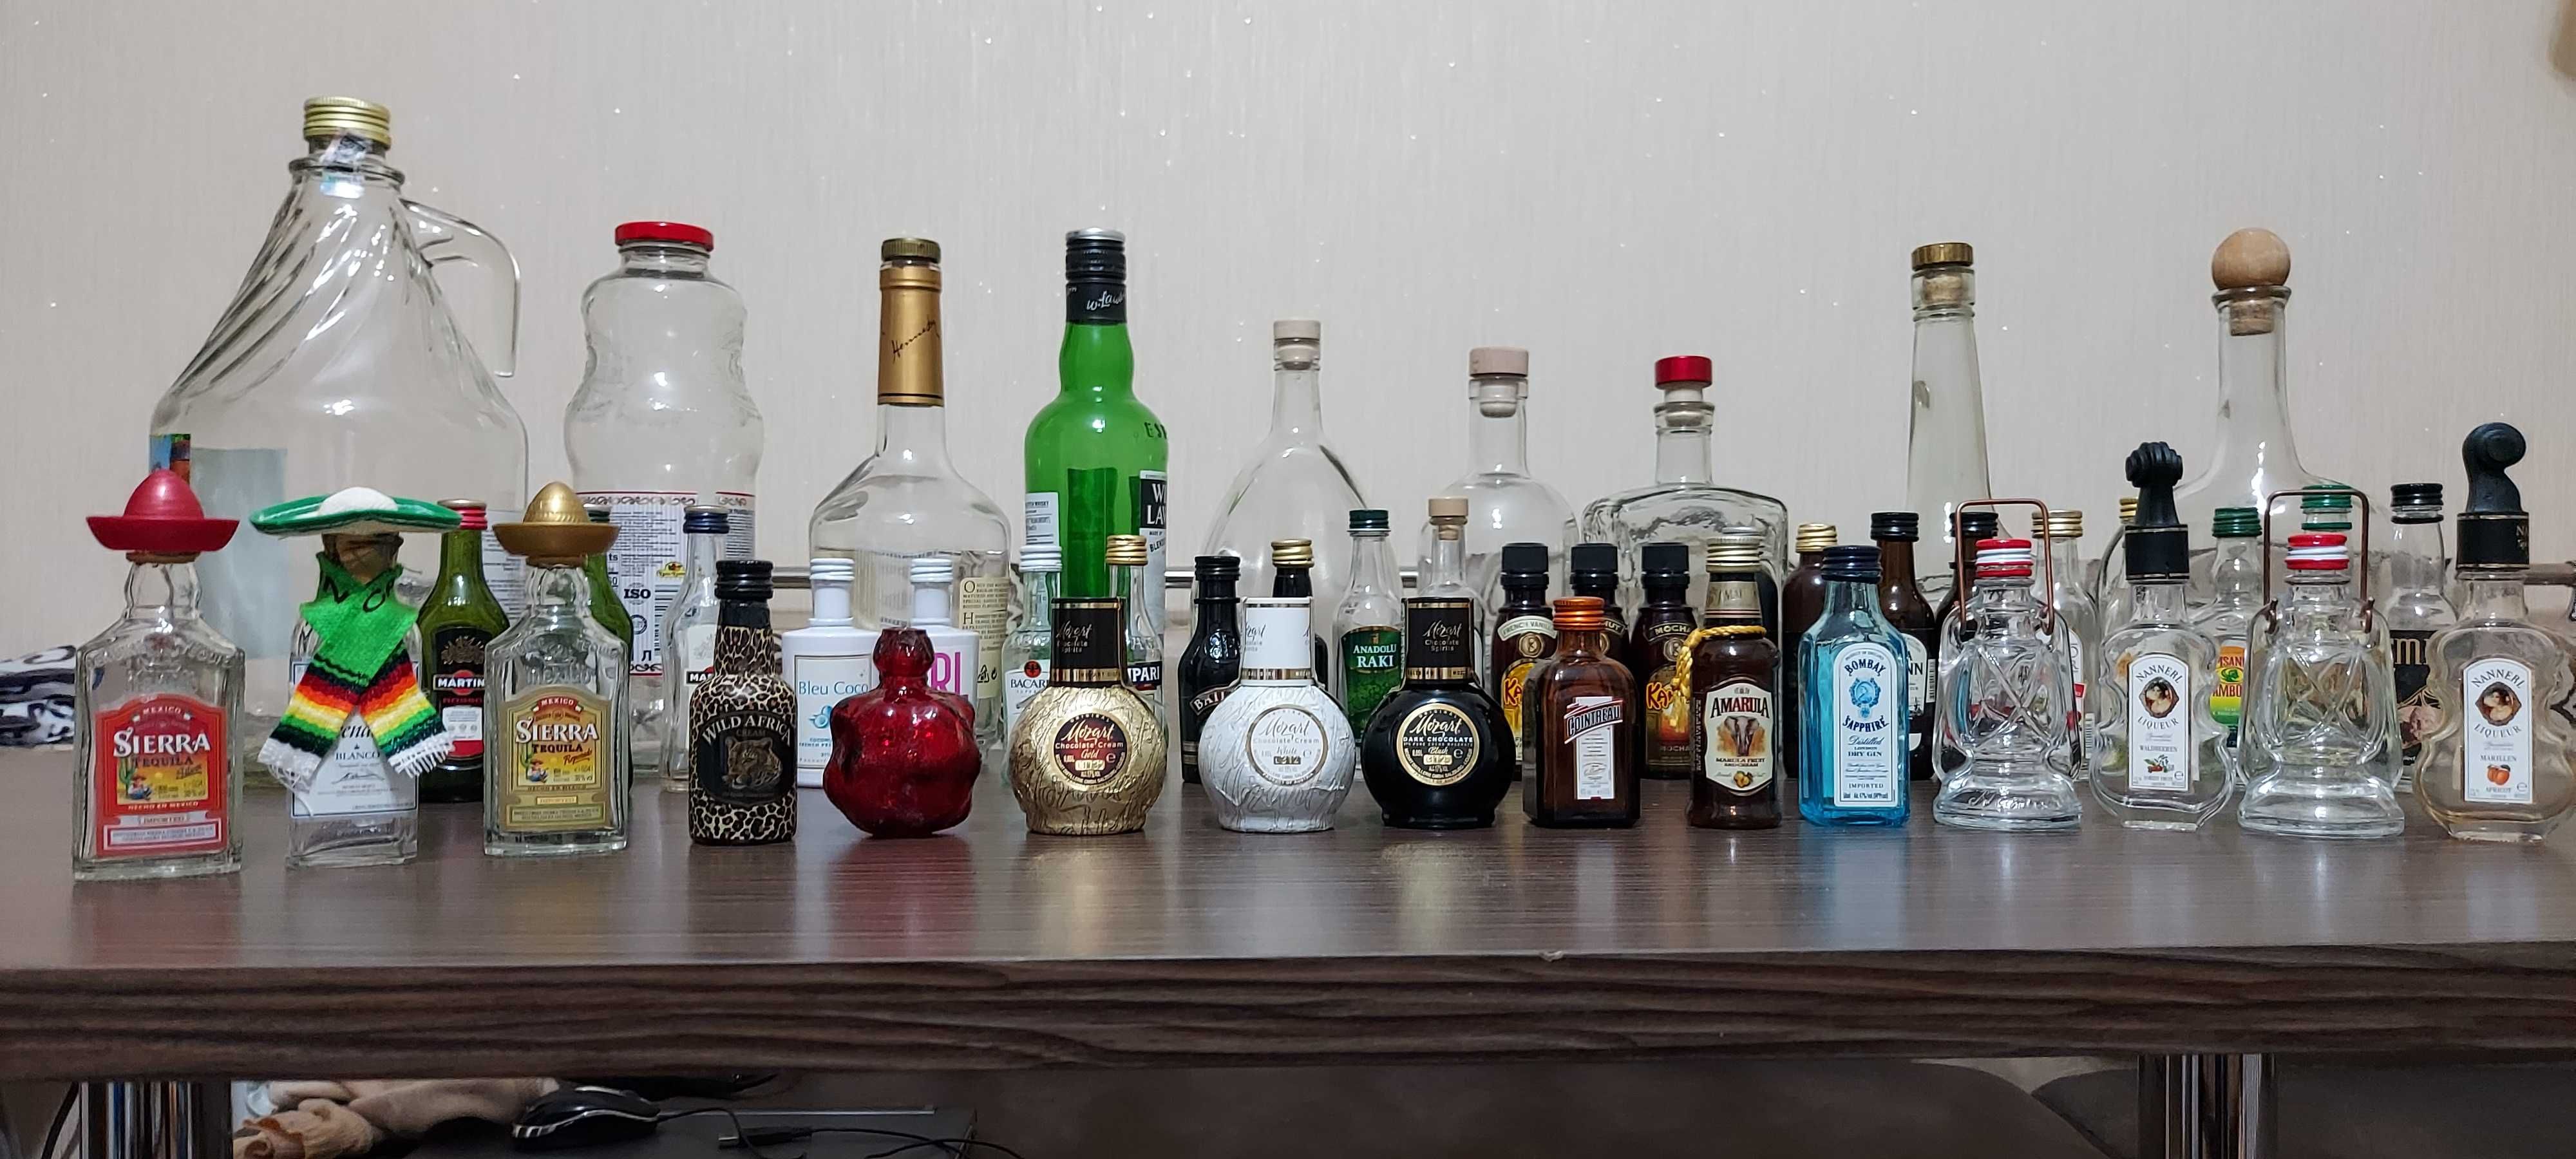 Бутылки пустые разные